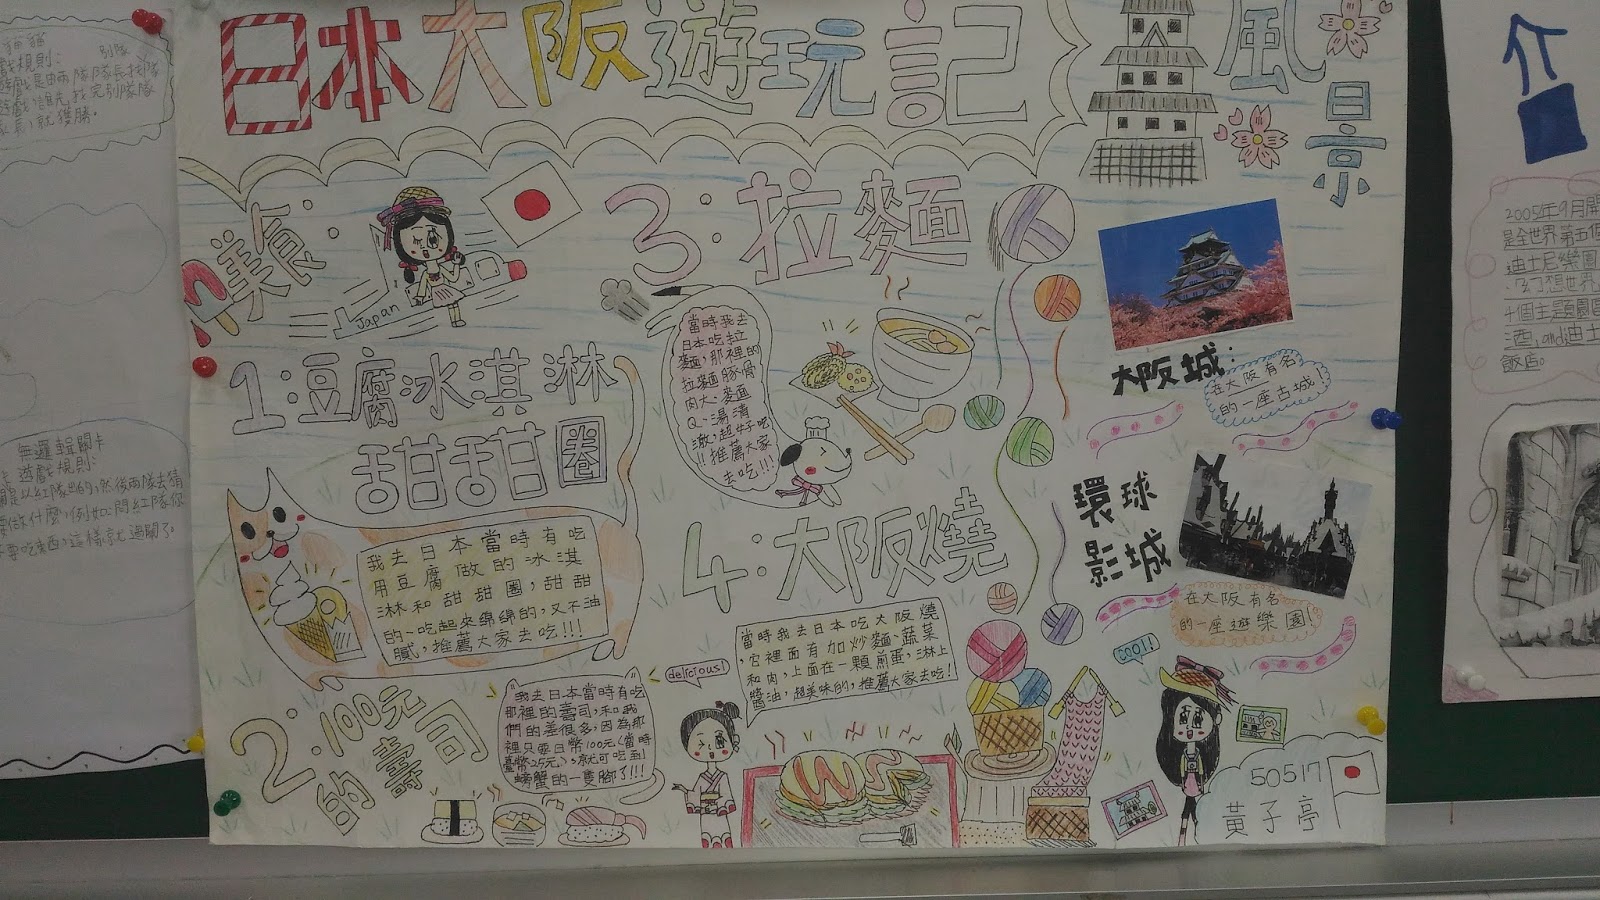 詹韋如老師的班級網頁 暑假作業自由研究海報與桌遊